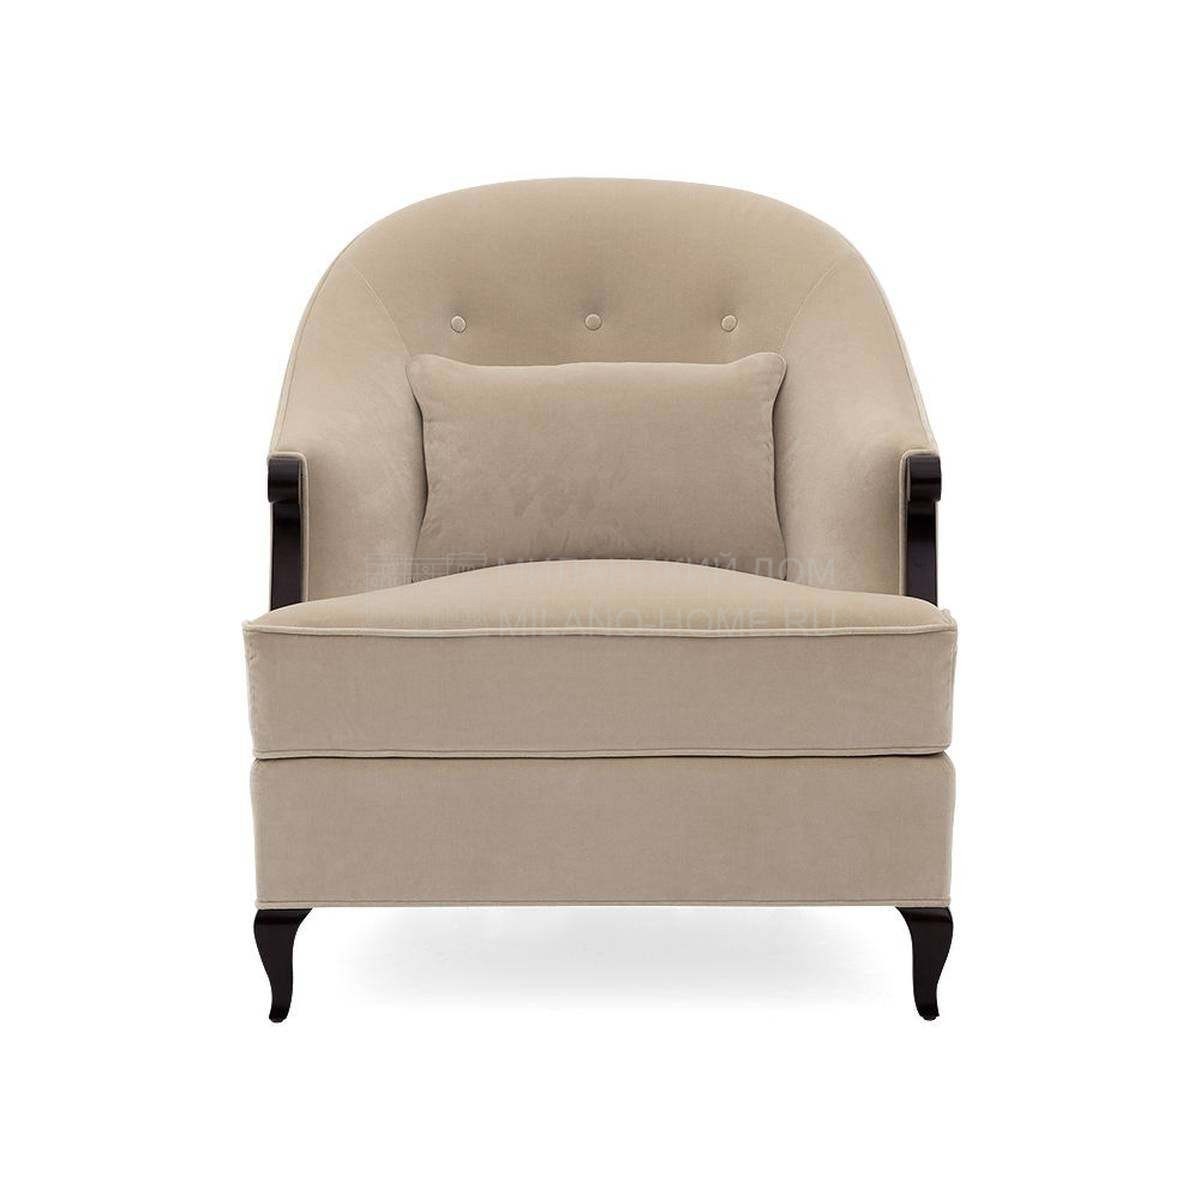 Кресло Morzine armchair из США фабрики CHRISTOPHER GUY